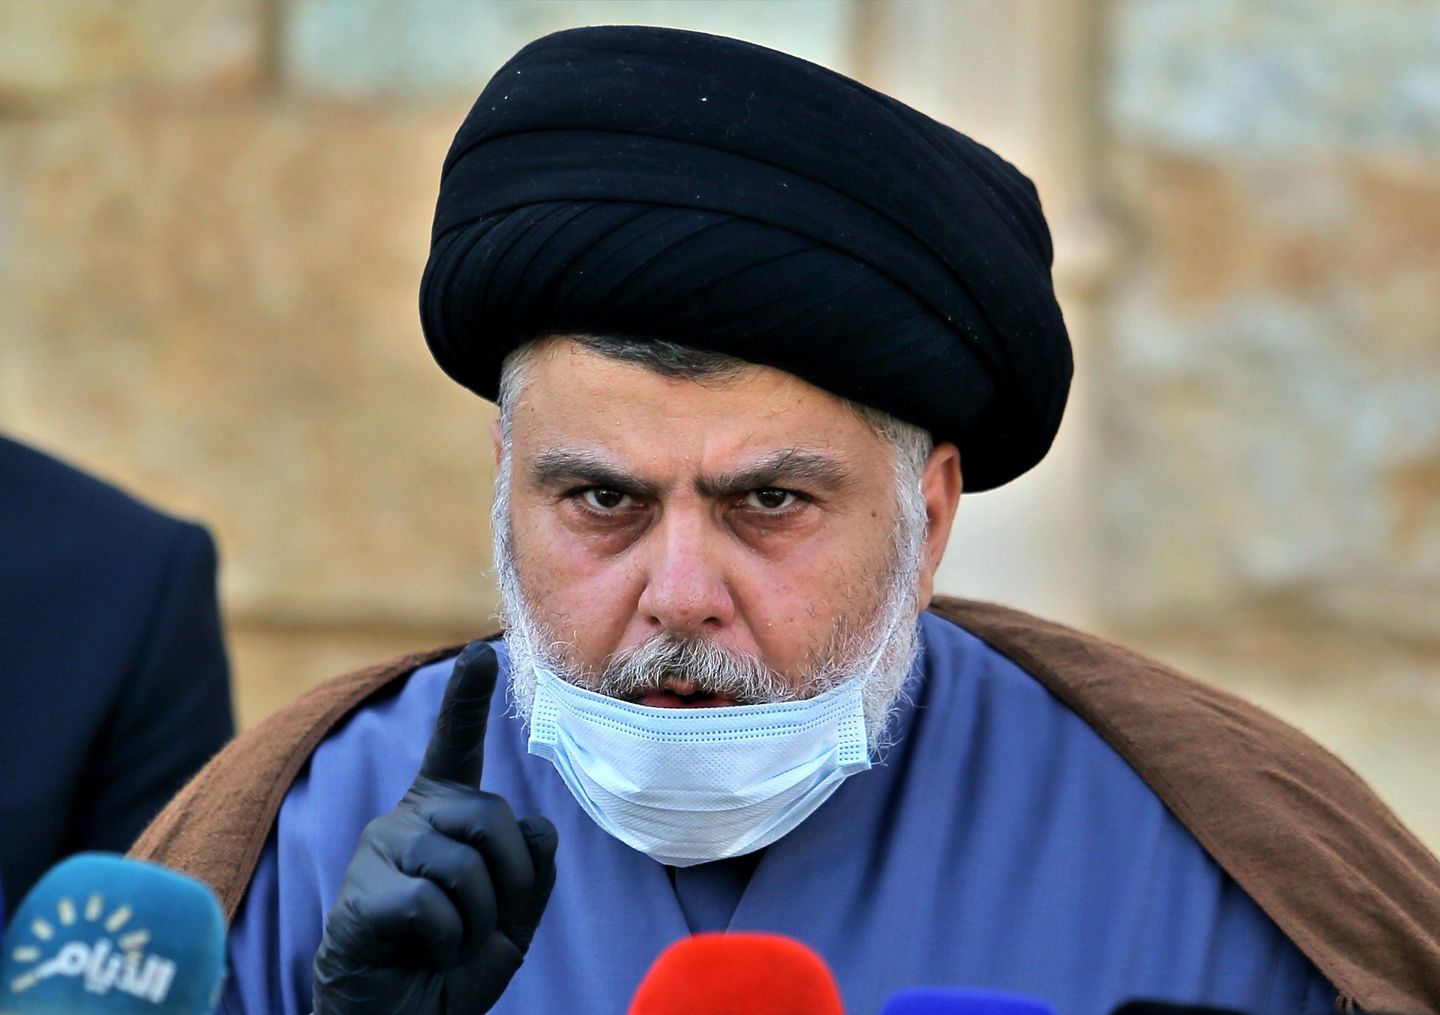 Iraklı Şii din adamı Mukteda es-Sadr, komplo dönüşünde emekli olduğunu duyurdu